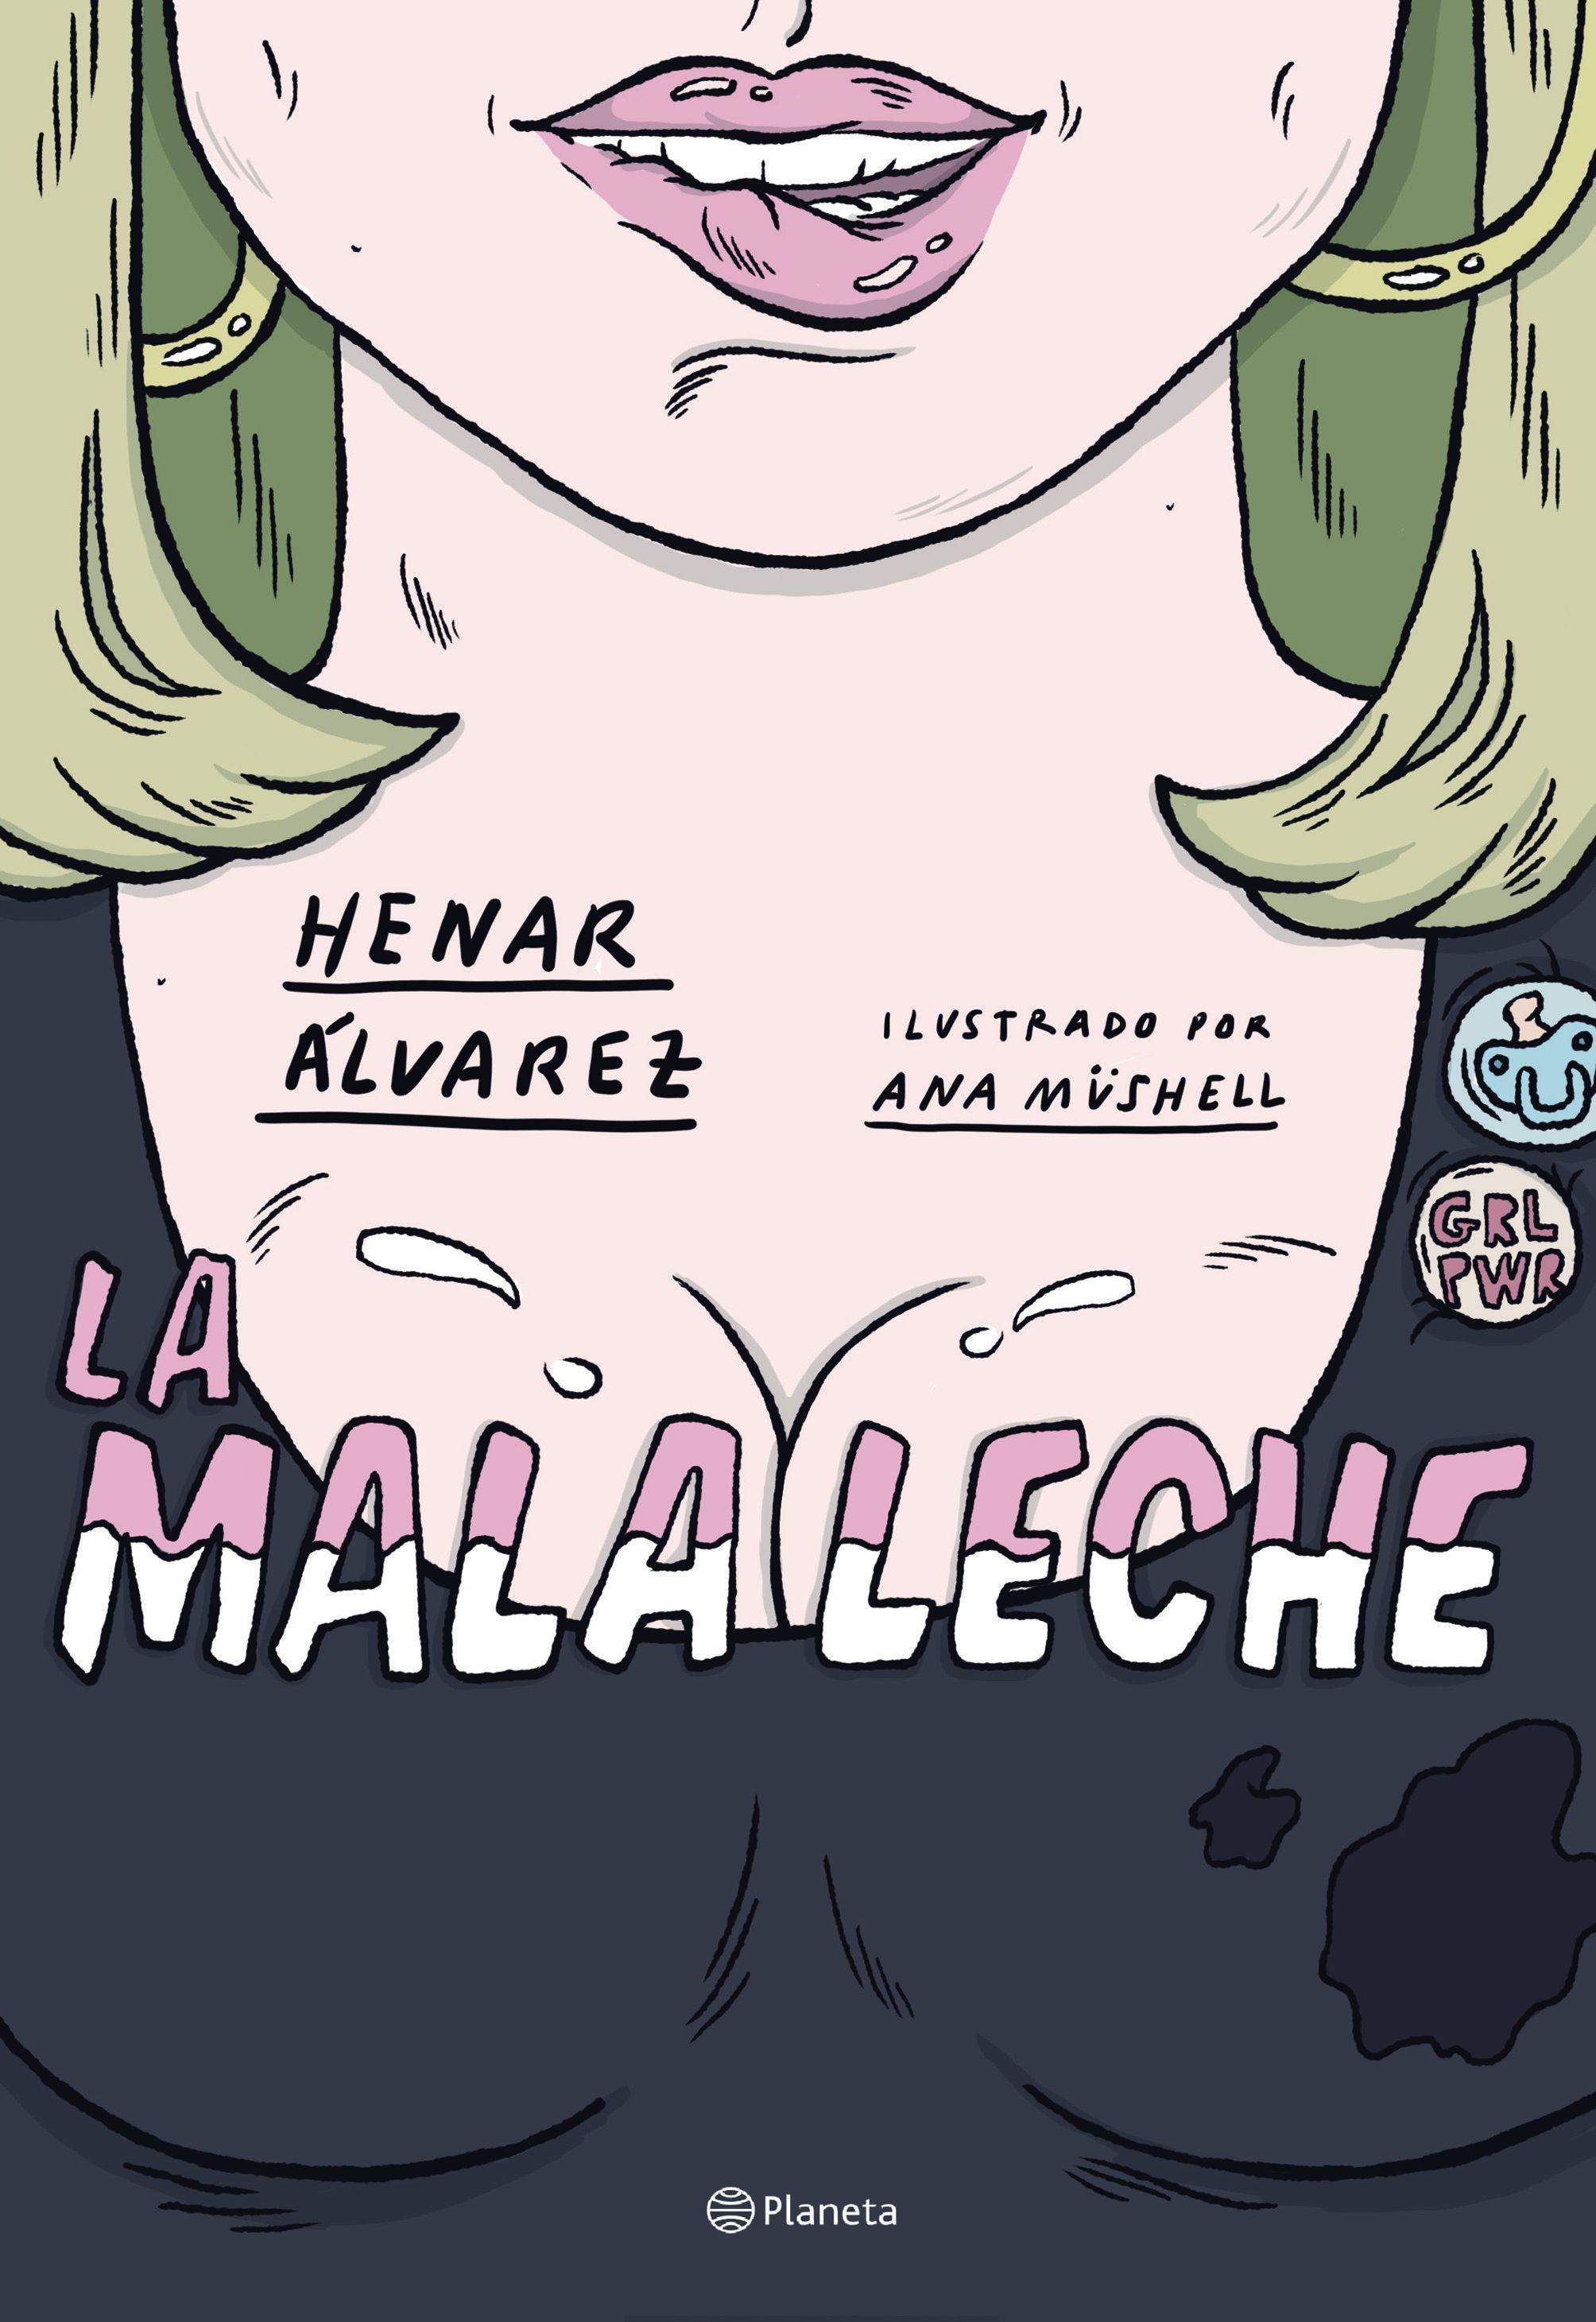 La Mala Leche "Ilustrado por Ana Müshell". 